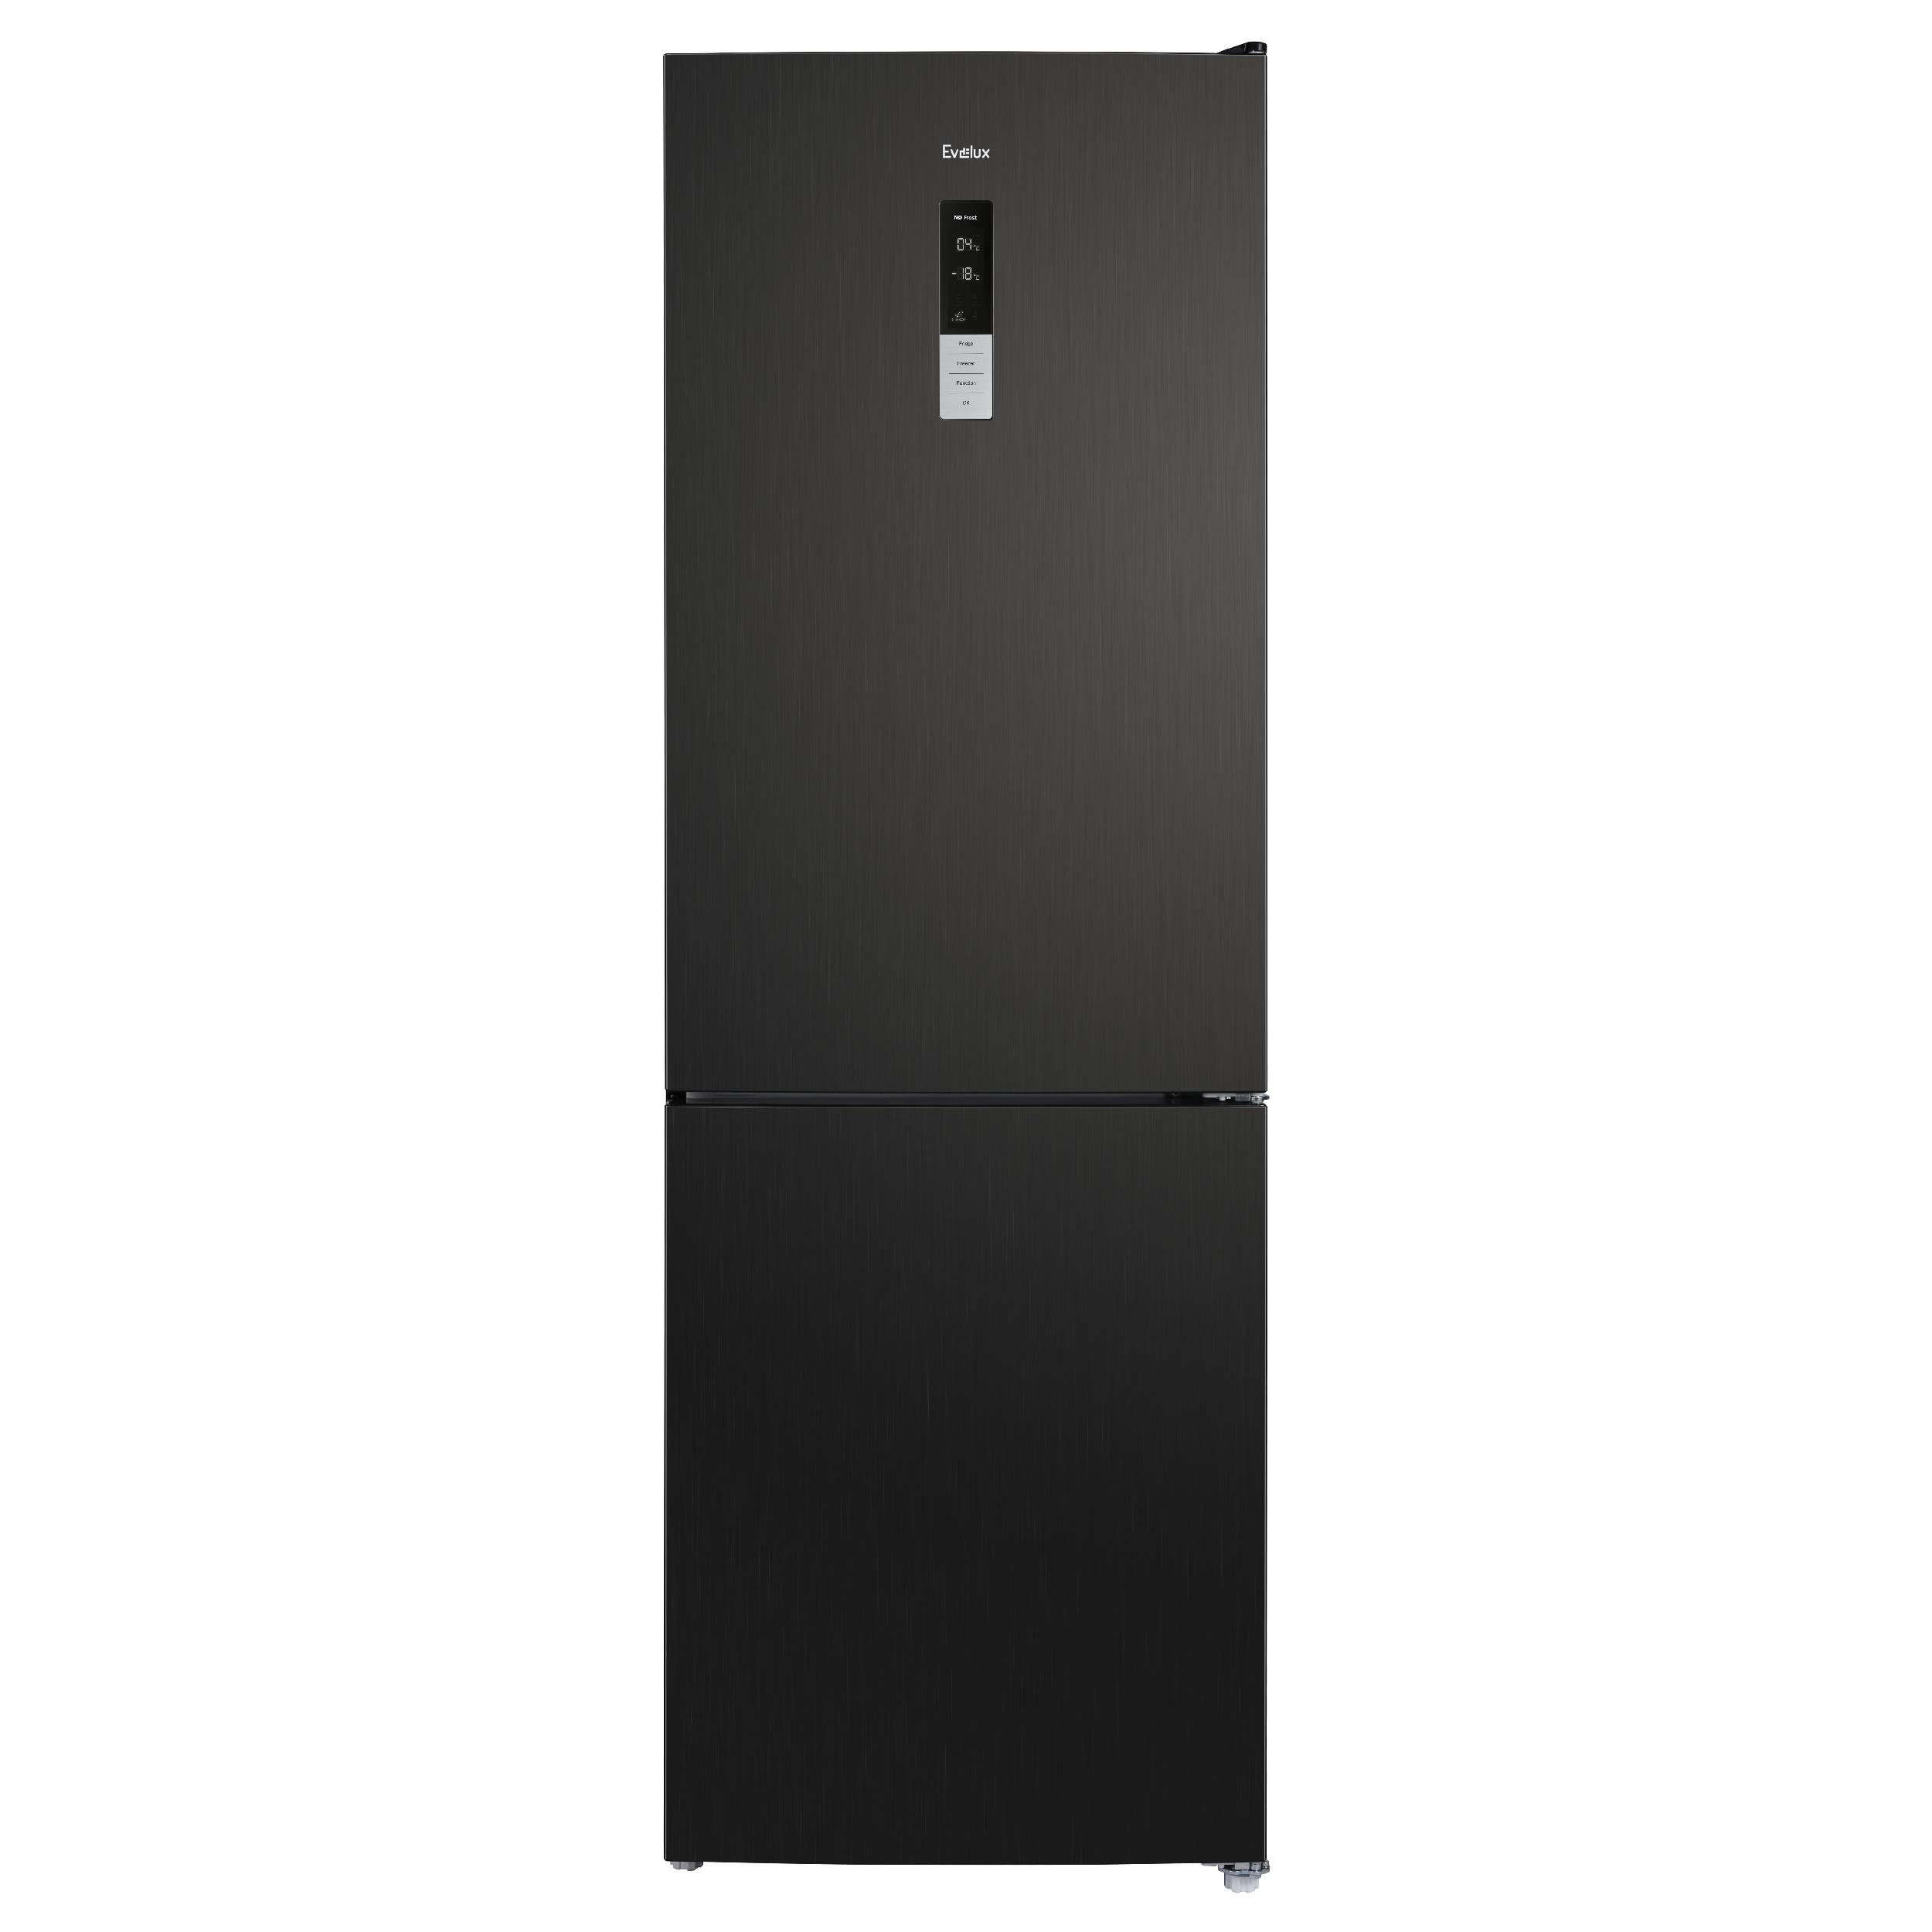 Холодильник Evelux FS 2201 DXN черный комплект спутникового телевидения триколор 046 91 00054122 центр 2тb gs b622 с592 1год подписки черный